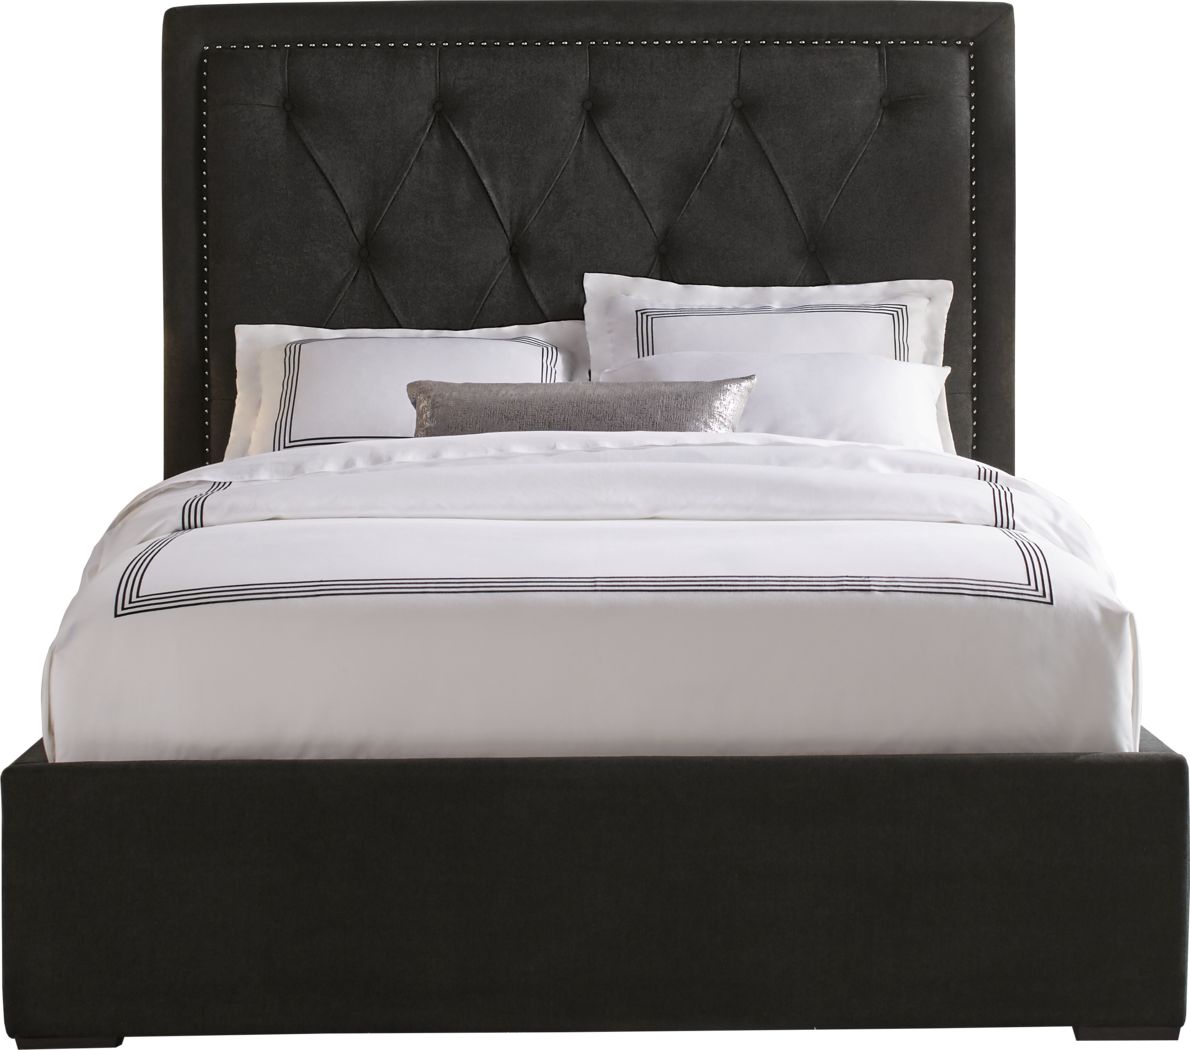 Black Upholstered Beds